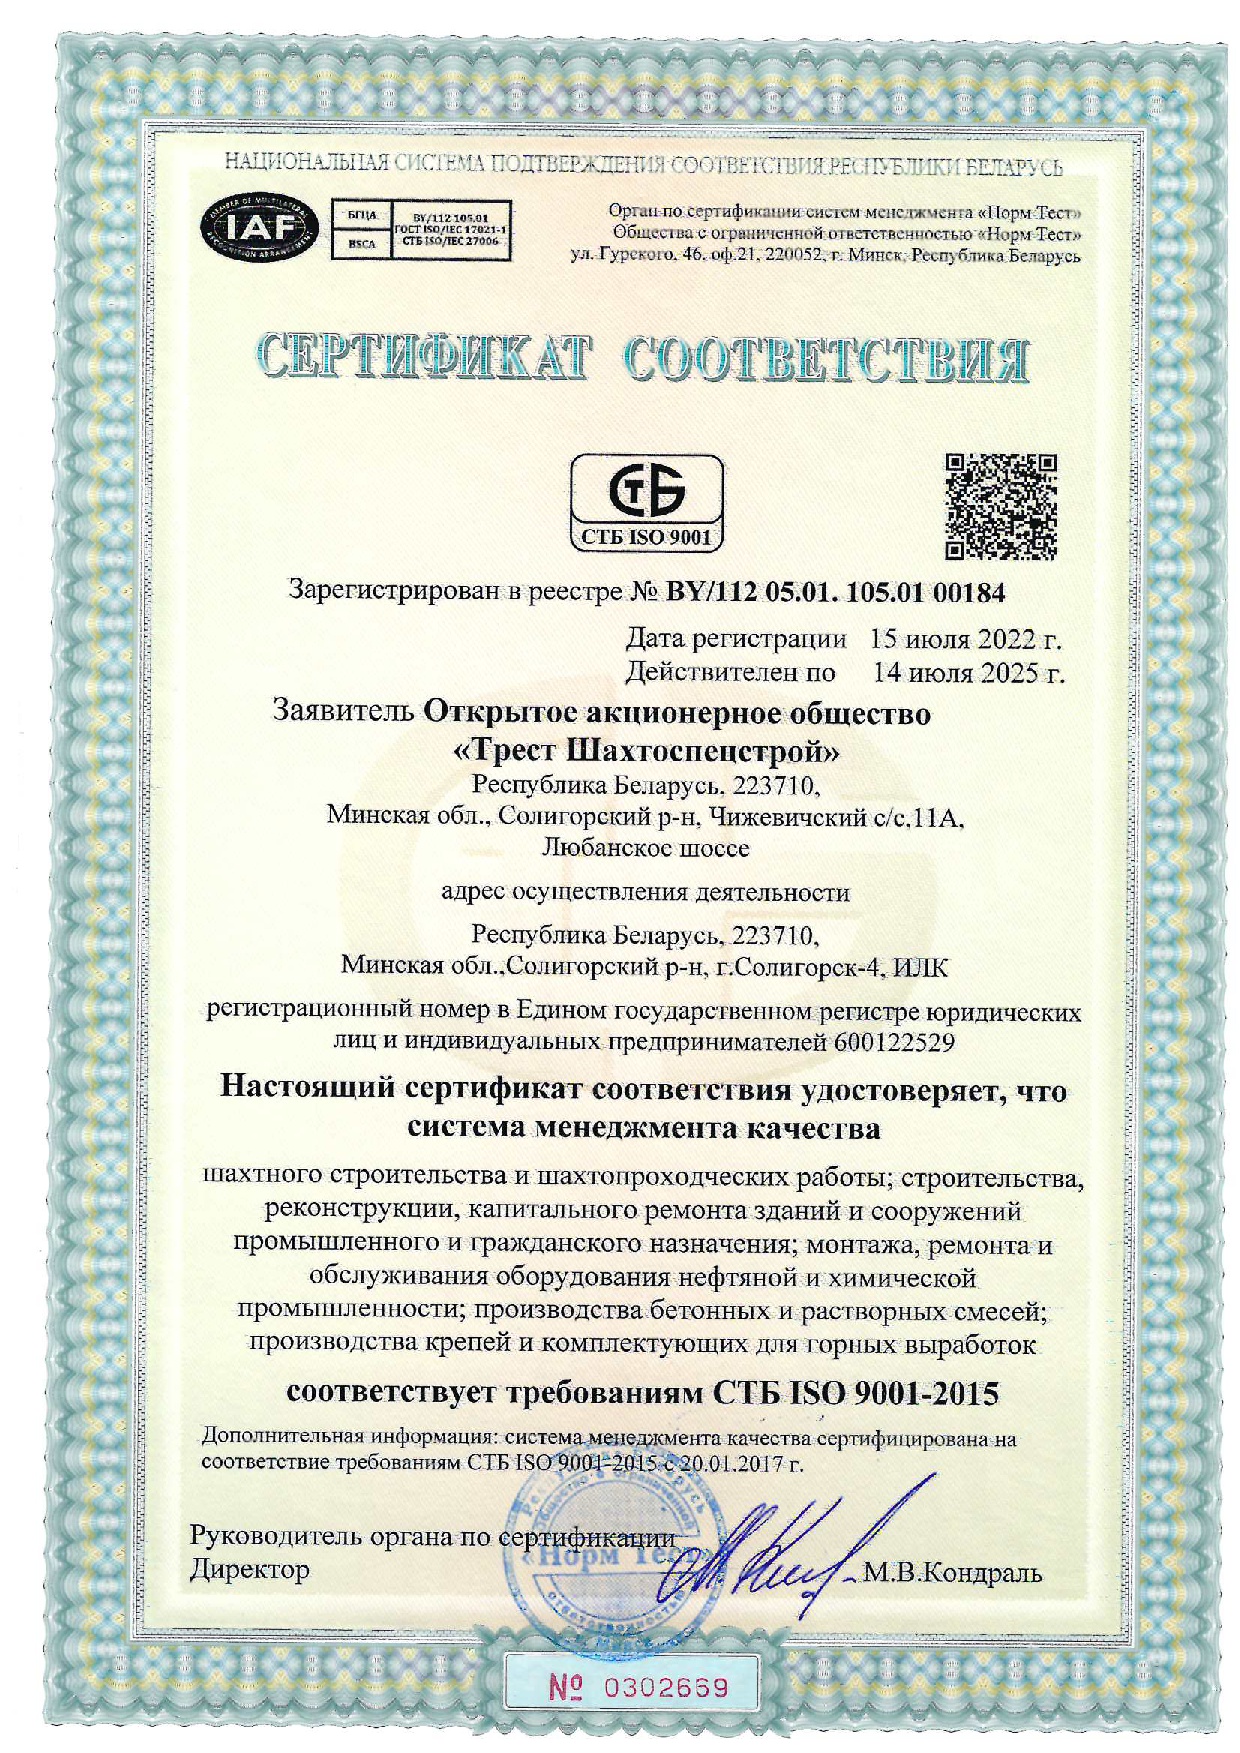 Сертификат СТБ ISO 9001 рус.jpg